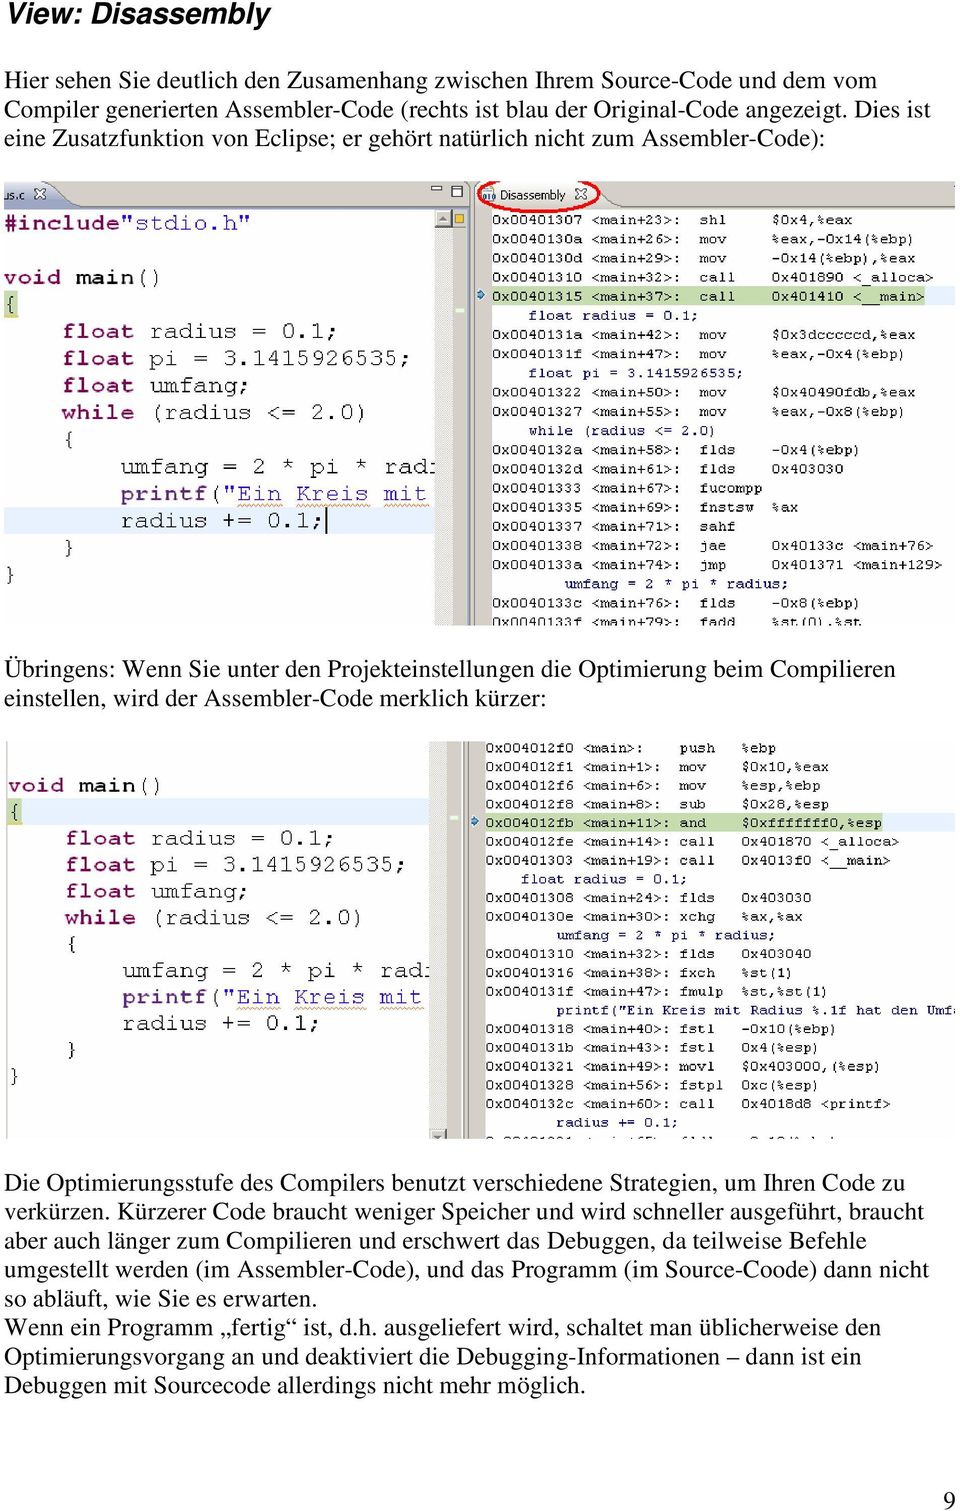 Assembler-Code merklich kürzer: Die Optimierungsstufe des Compilers benutzt verschiedene Strategien, um Ihren Code zu verkürzen.